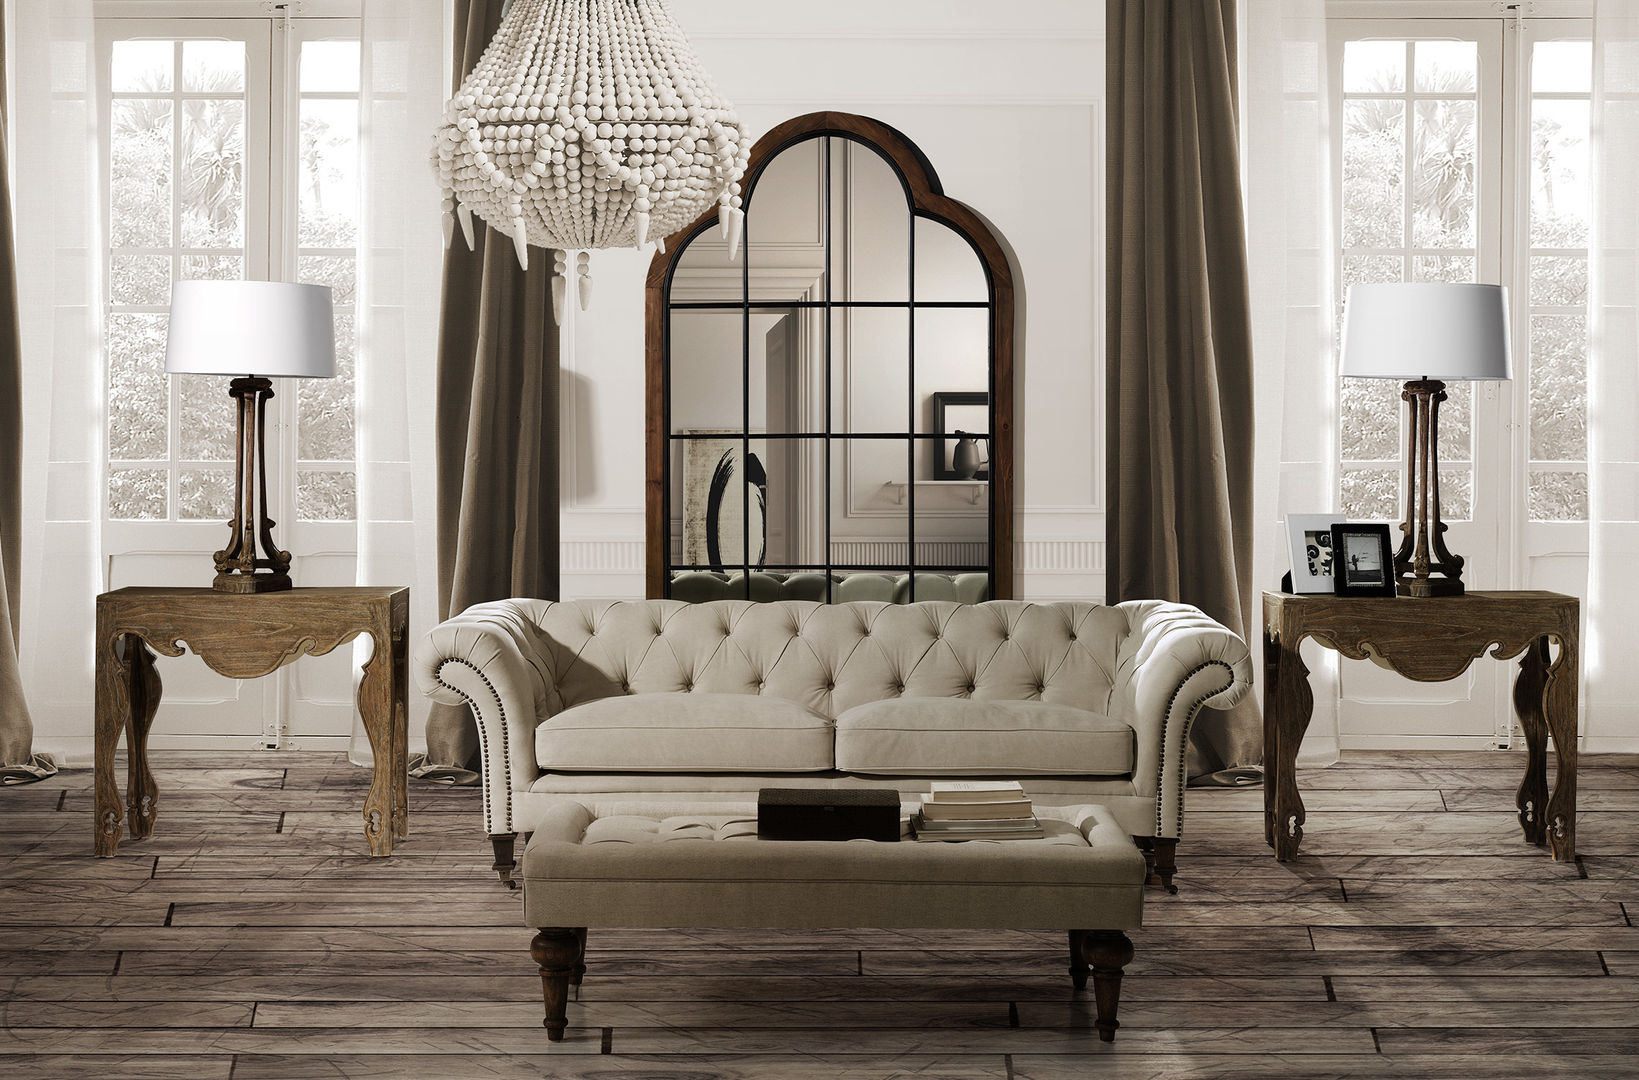 Colección Chateau Decor de Keen Replicas, Keen Replicas Keen Replicas Classic style living room Sofas & armchairs